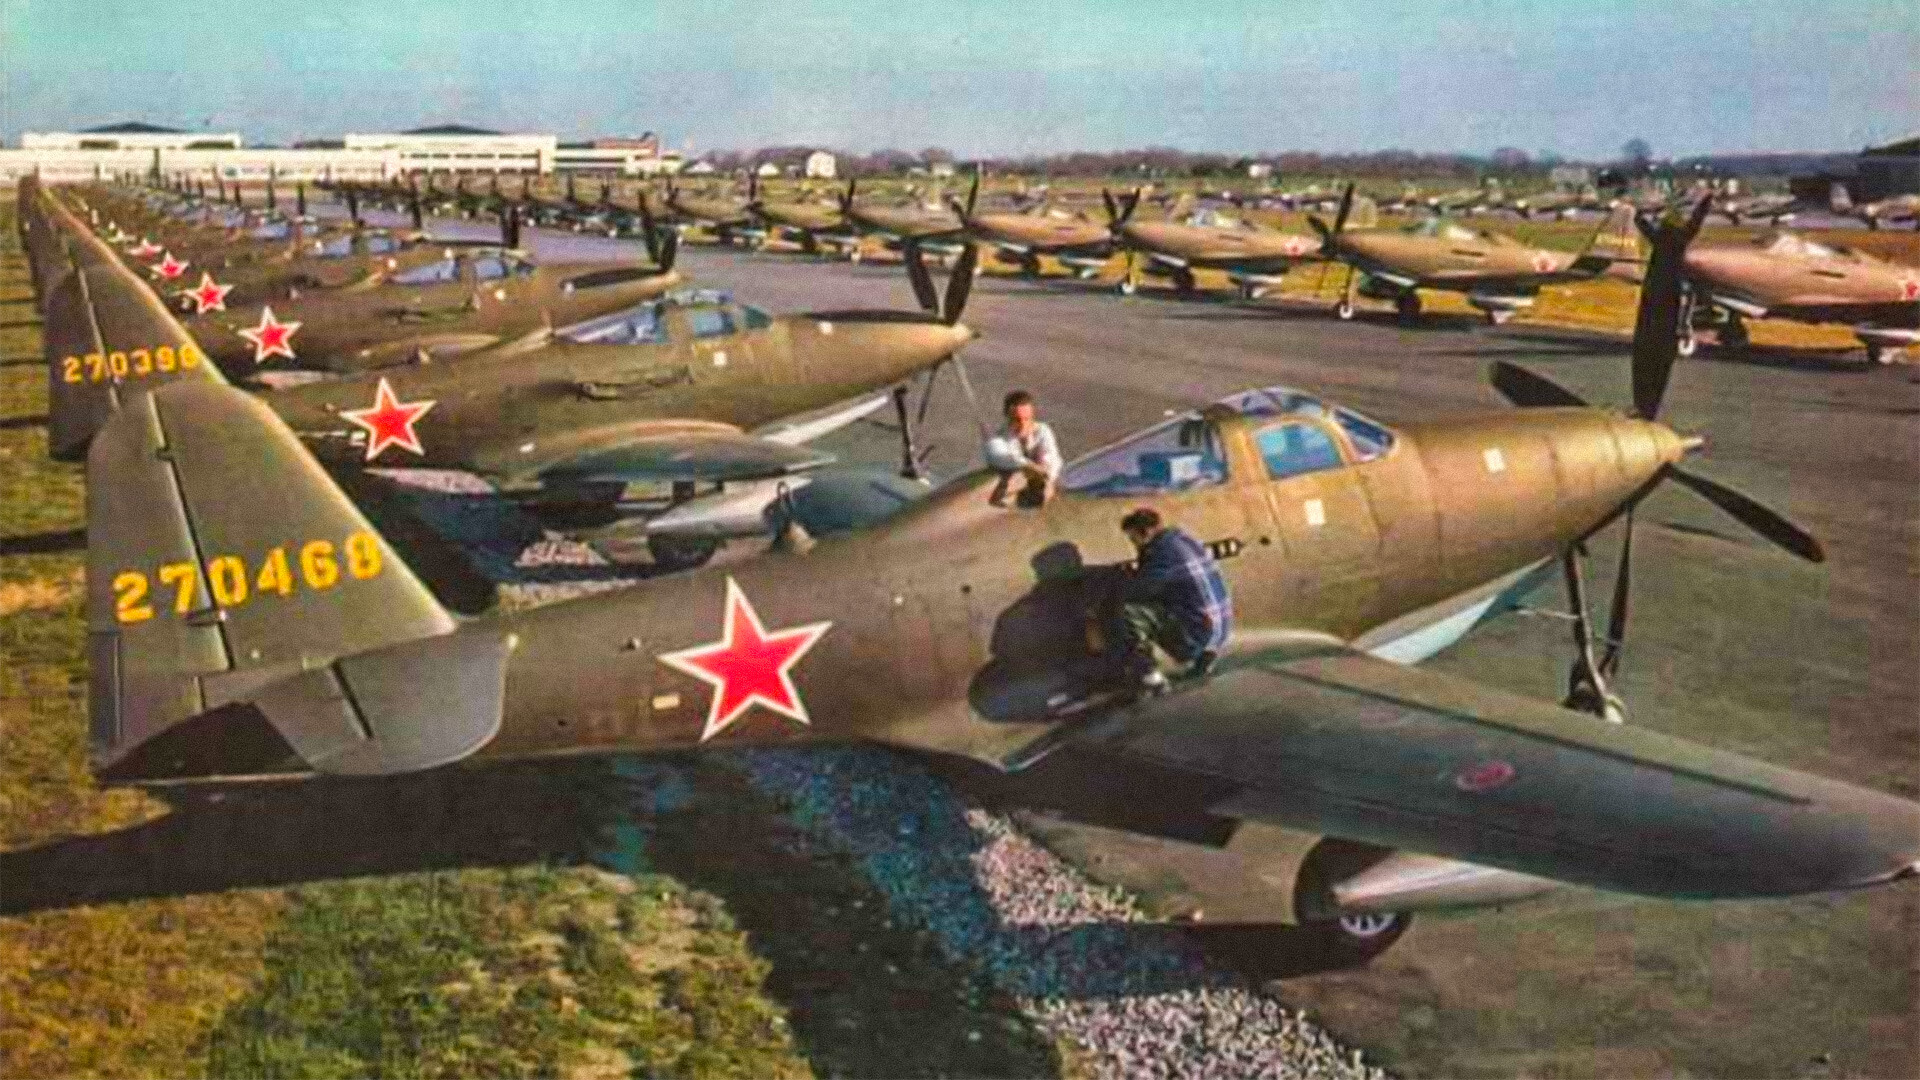 world war 2 british fighter planes